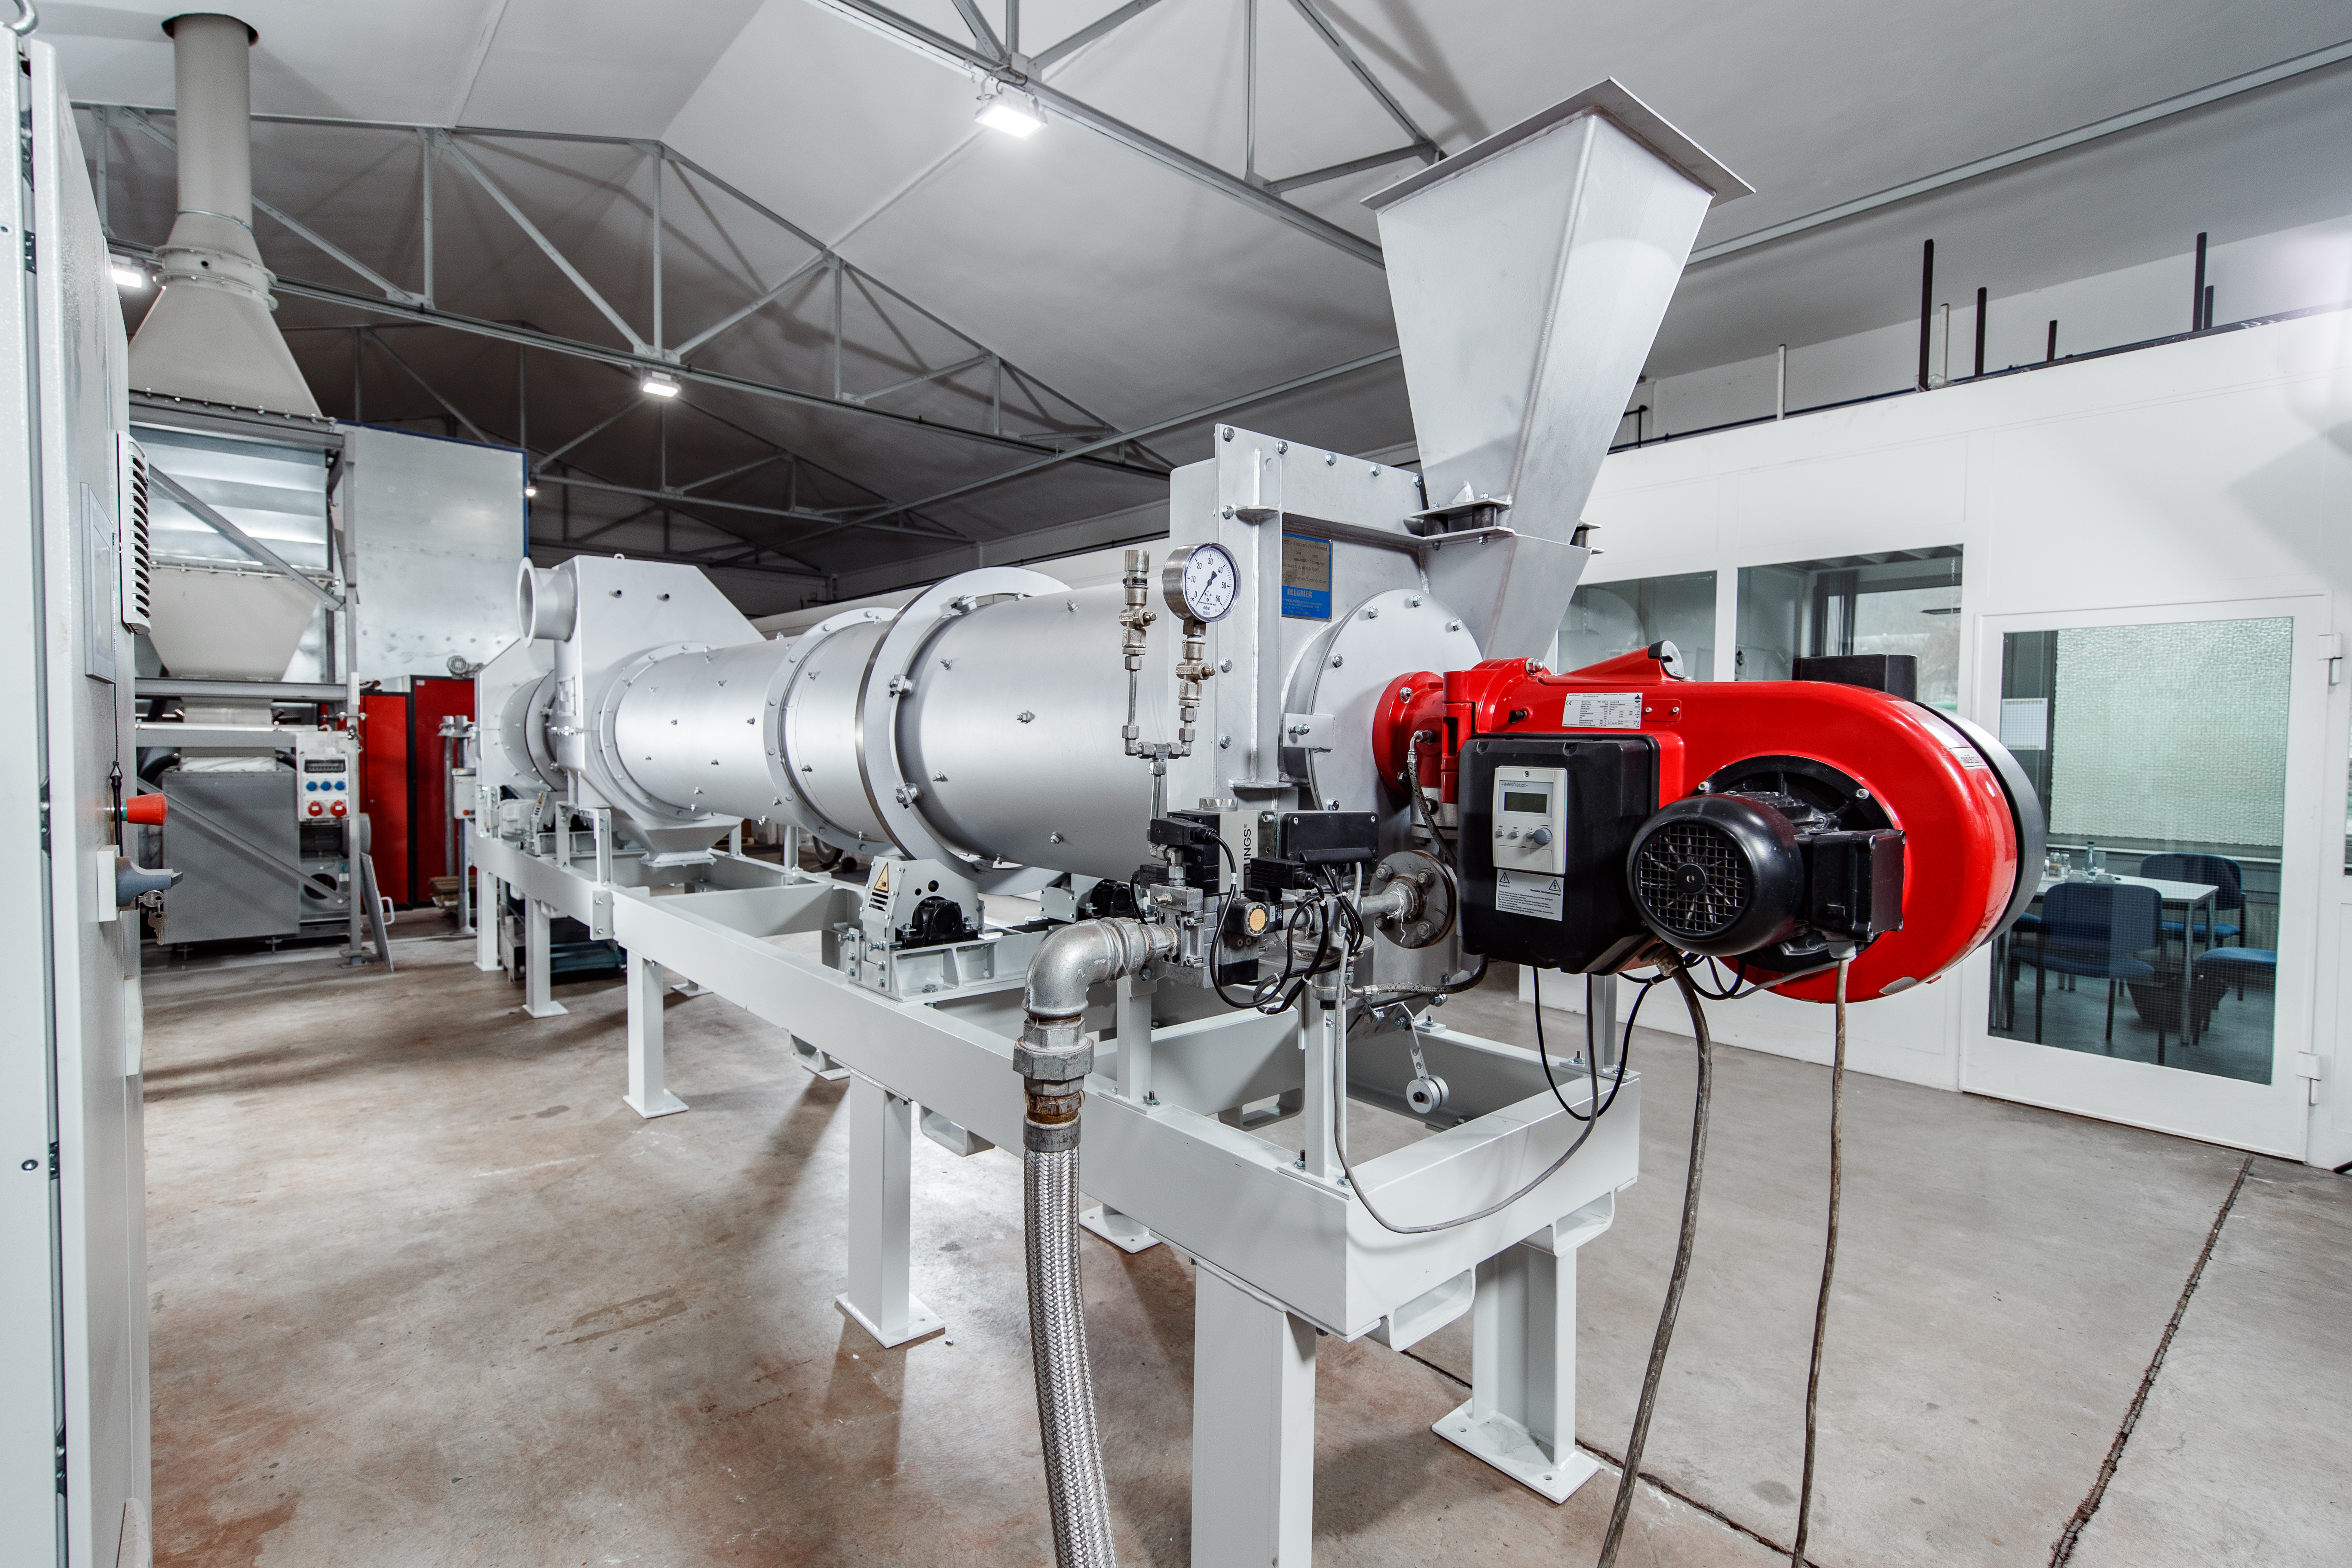 séchoir-refroidisseur combiné à tambour système mozer pour le traitement de matières solides dans un hall de production | © Allgaier Process Technology 2022